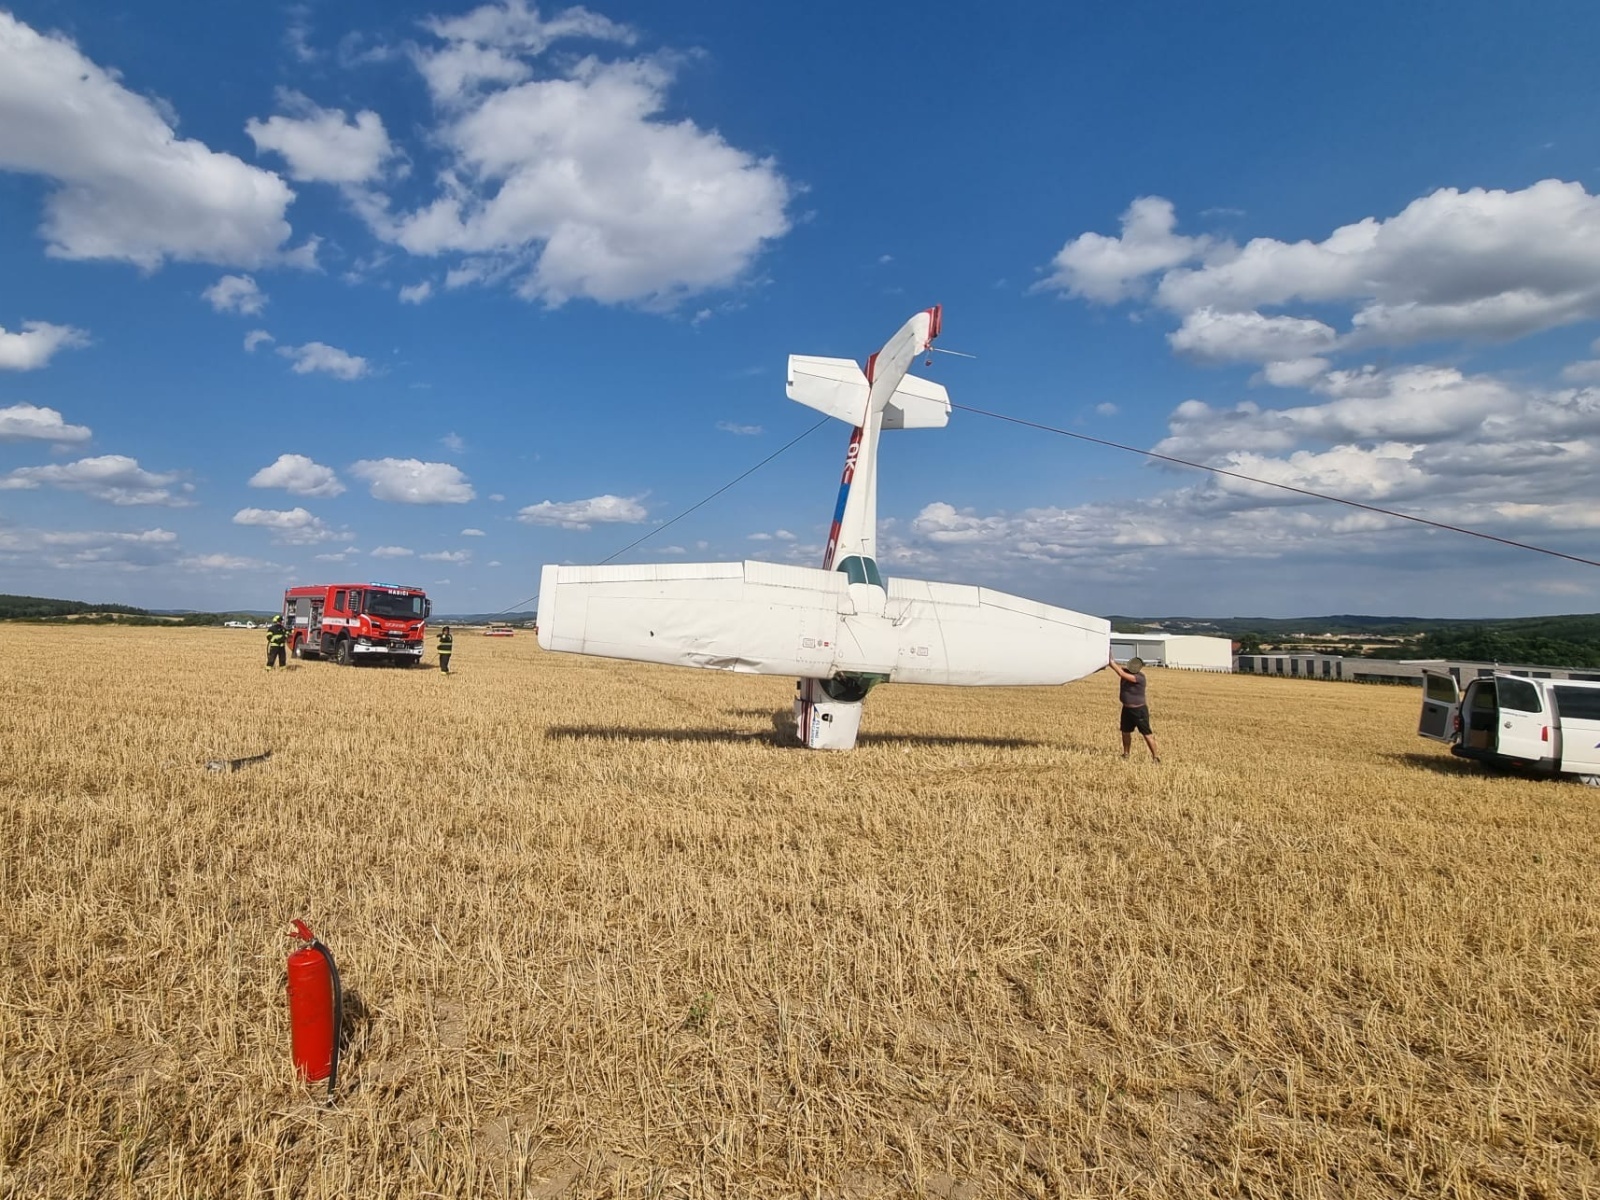 217-Převracení malého letadla po havárii na letišti v Dlouhé Lhotě u Příbrami.jpg